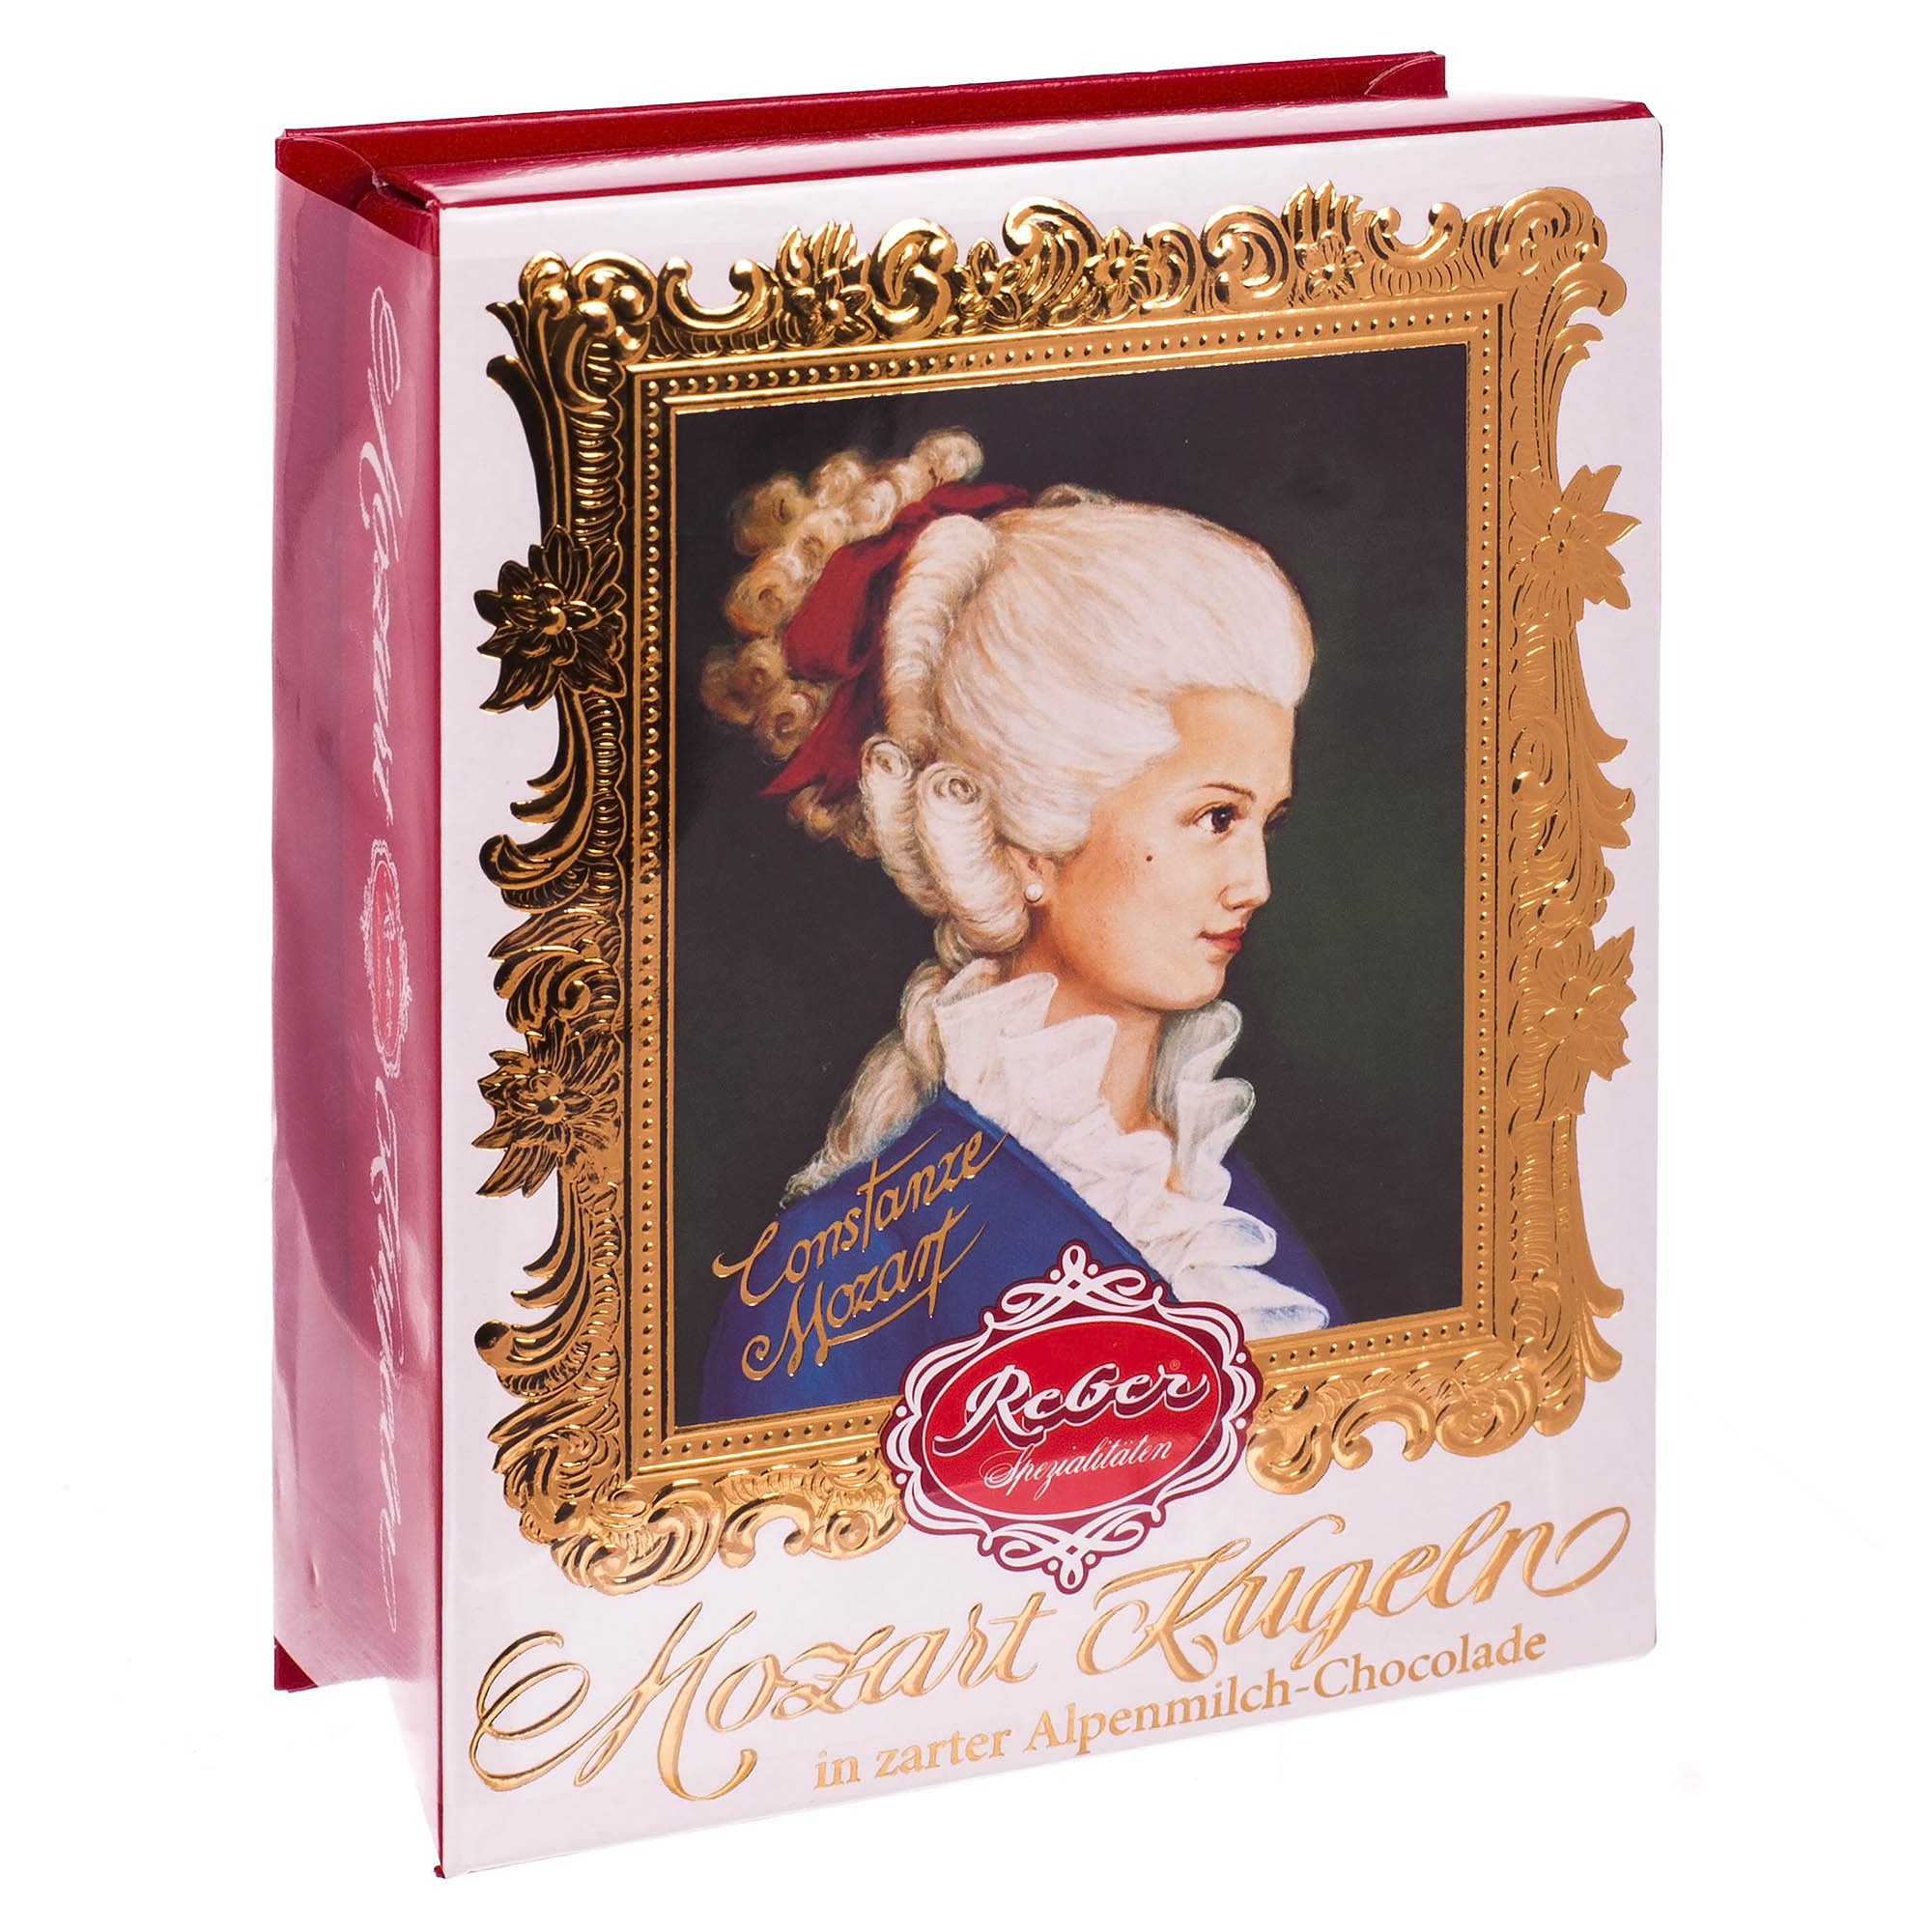 Mozart Kugel Reber подарочный набор с молочным шоколадом 120 г (1410111/5) набор печатей для марципана и теста доляна